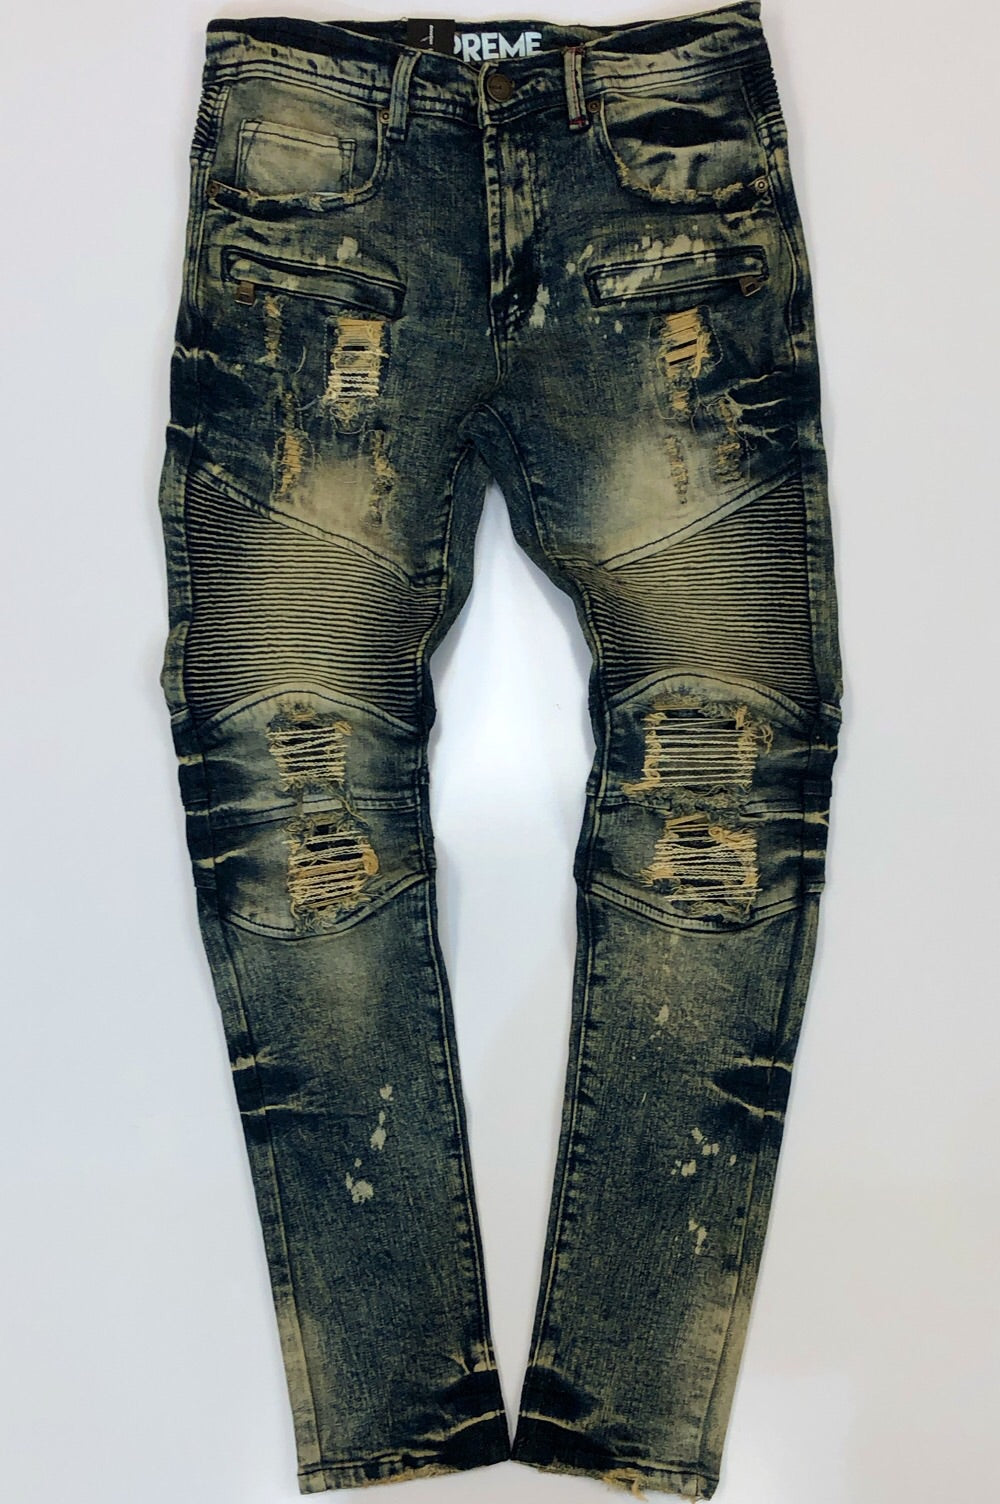 Preme- novelty jeans